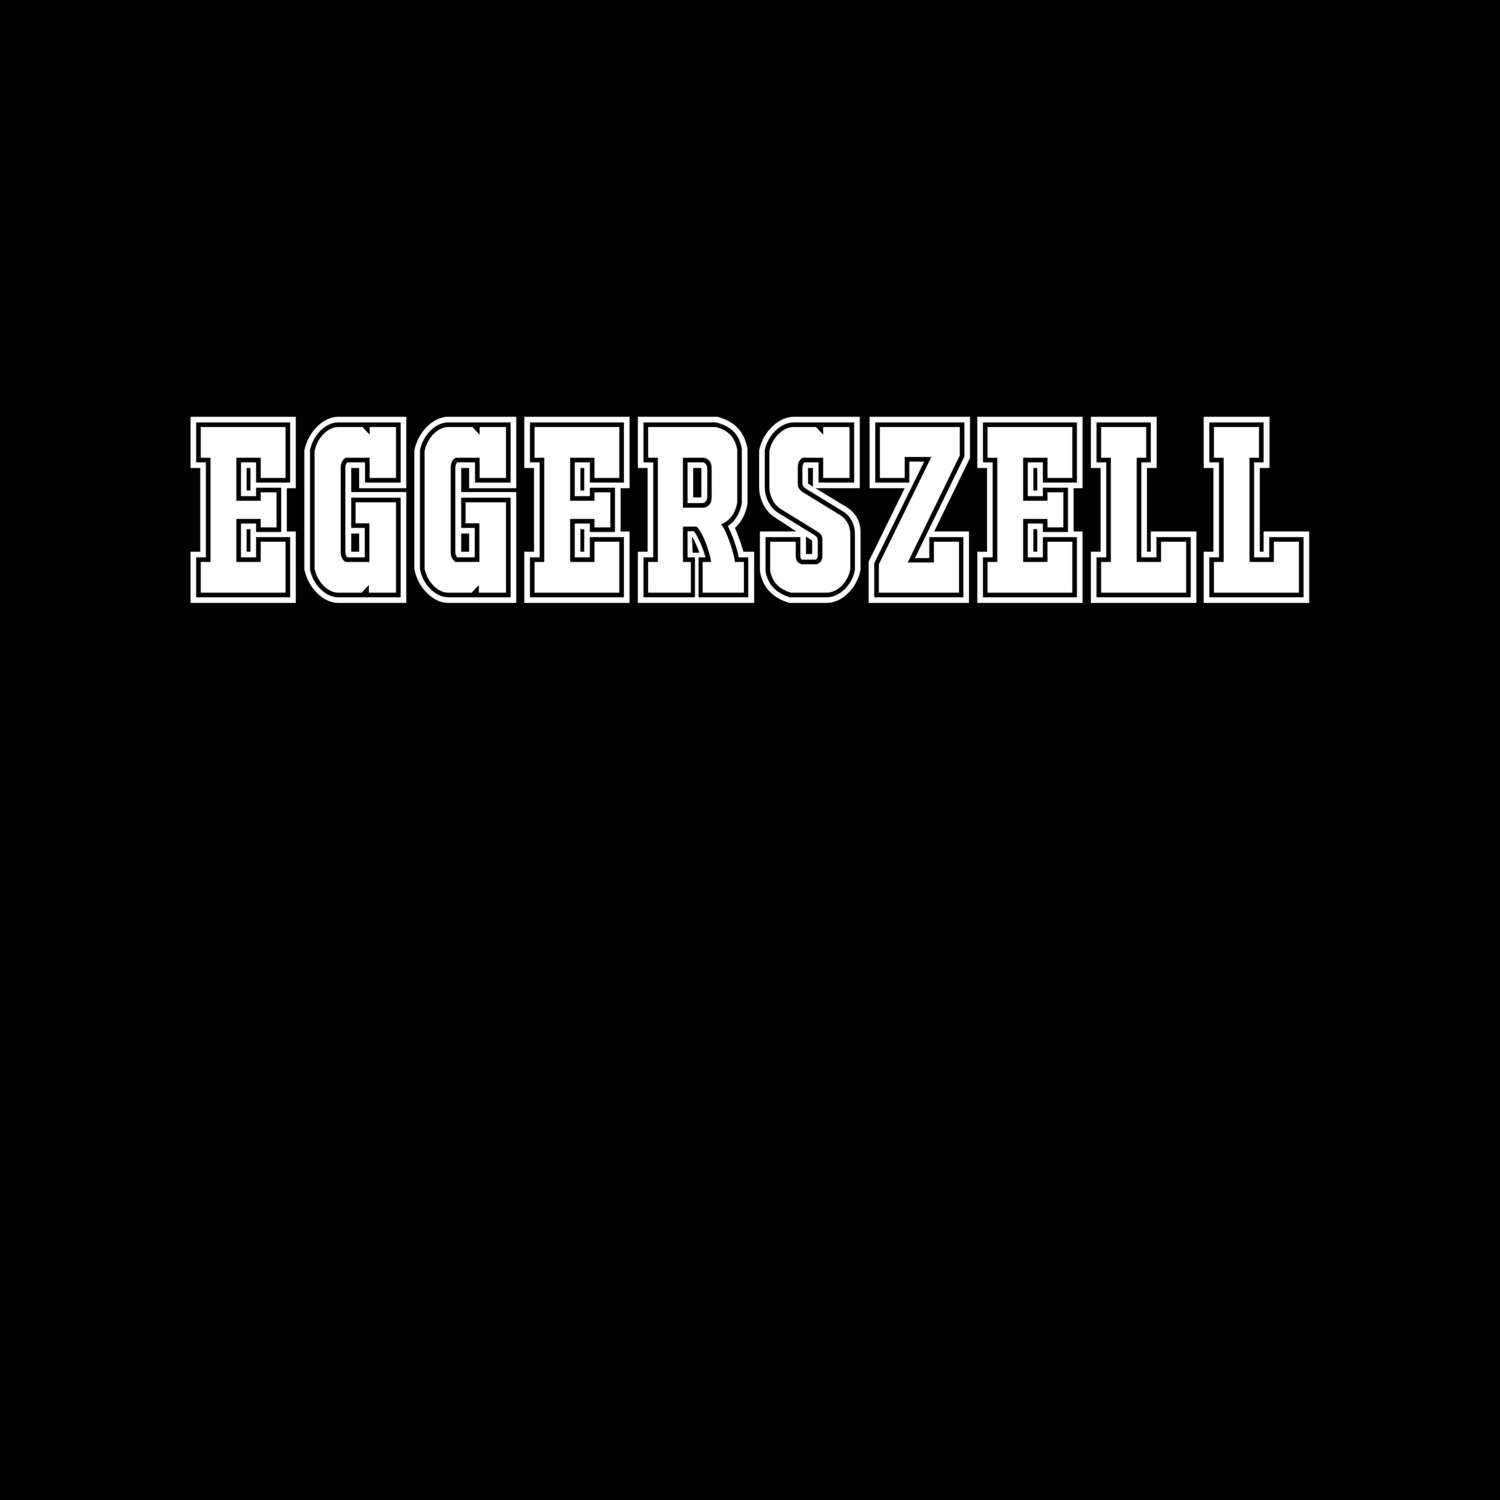 Eggerszell T-Shirt »Classic«